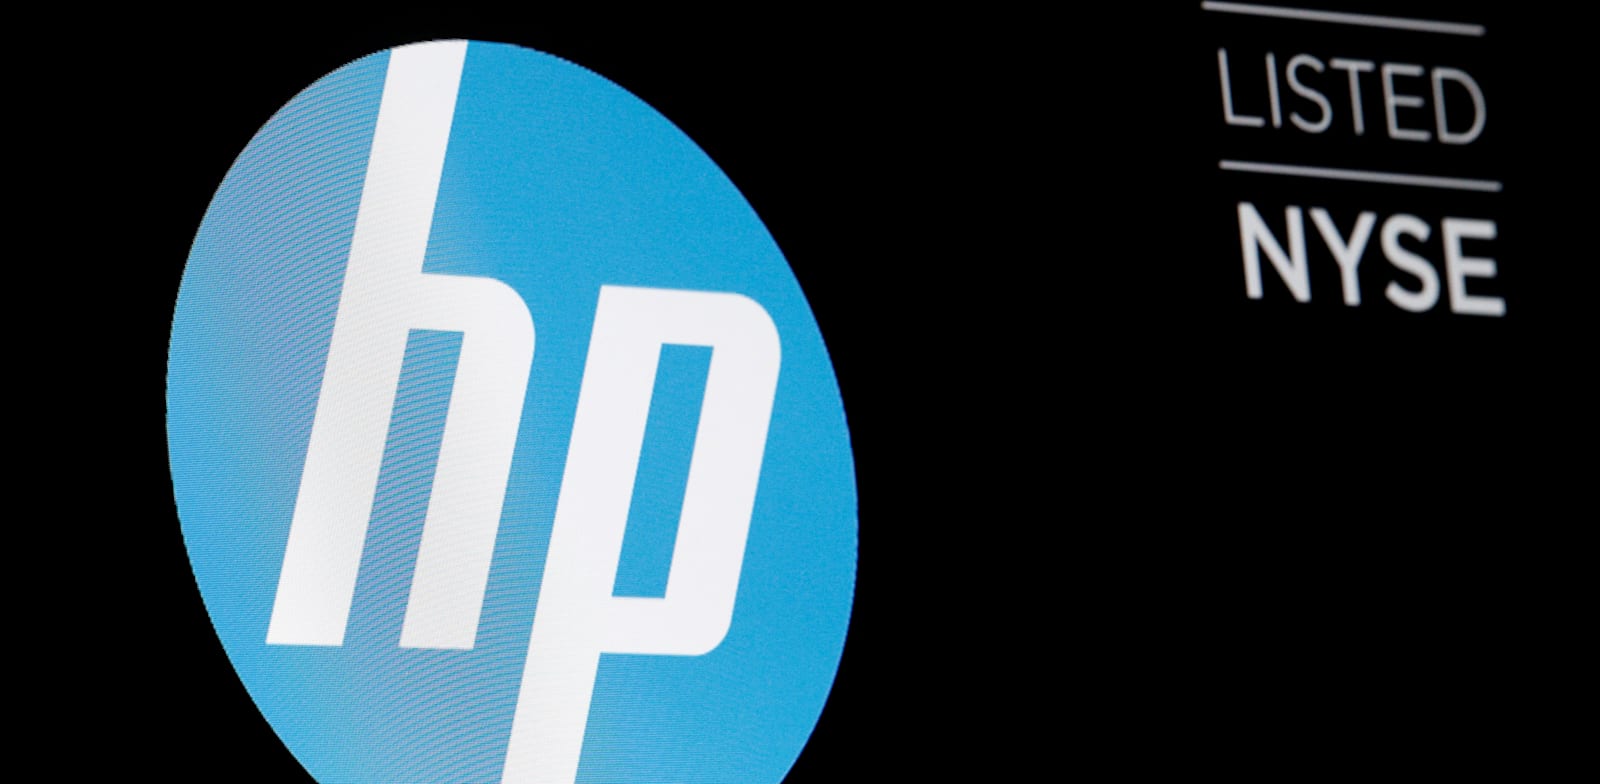 חברת HP. תפטר אלפי עובדים בשלוש השנים הקרובות / צילום: Reuters, Brendan McDermid